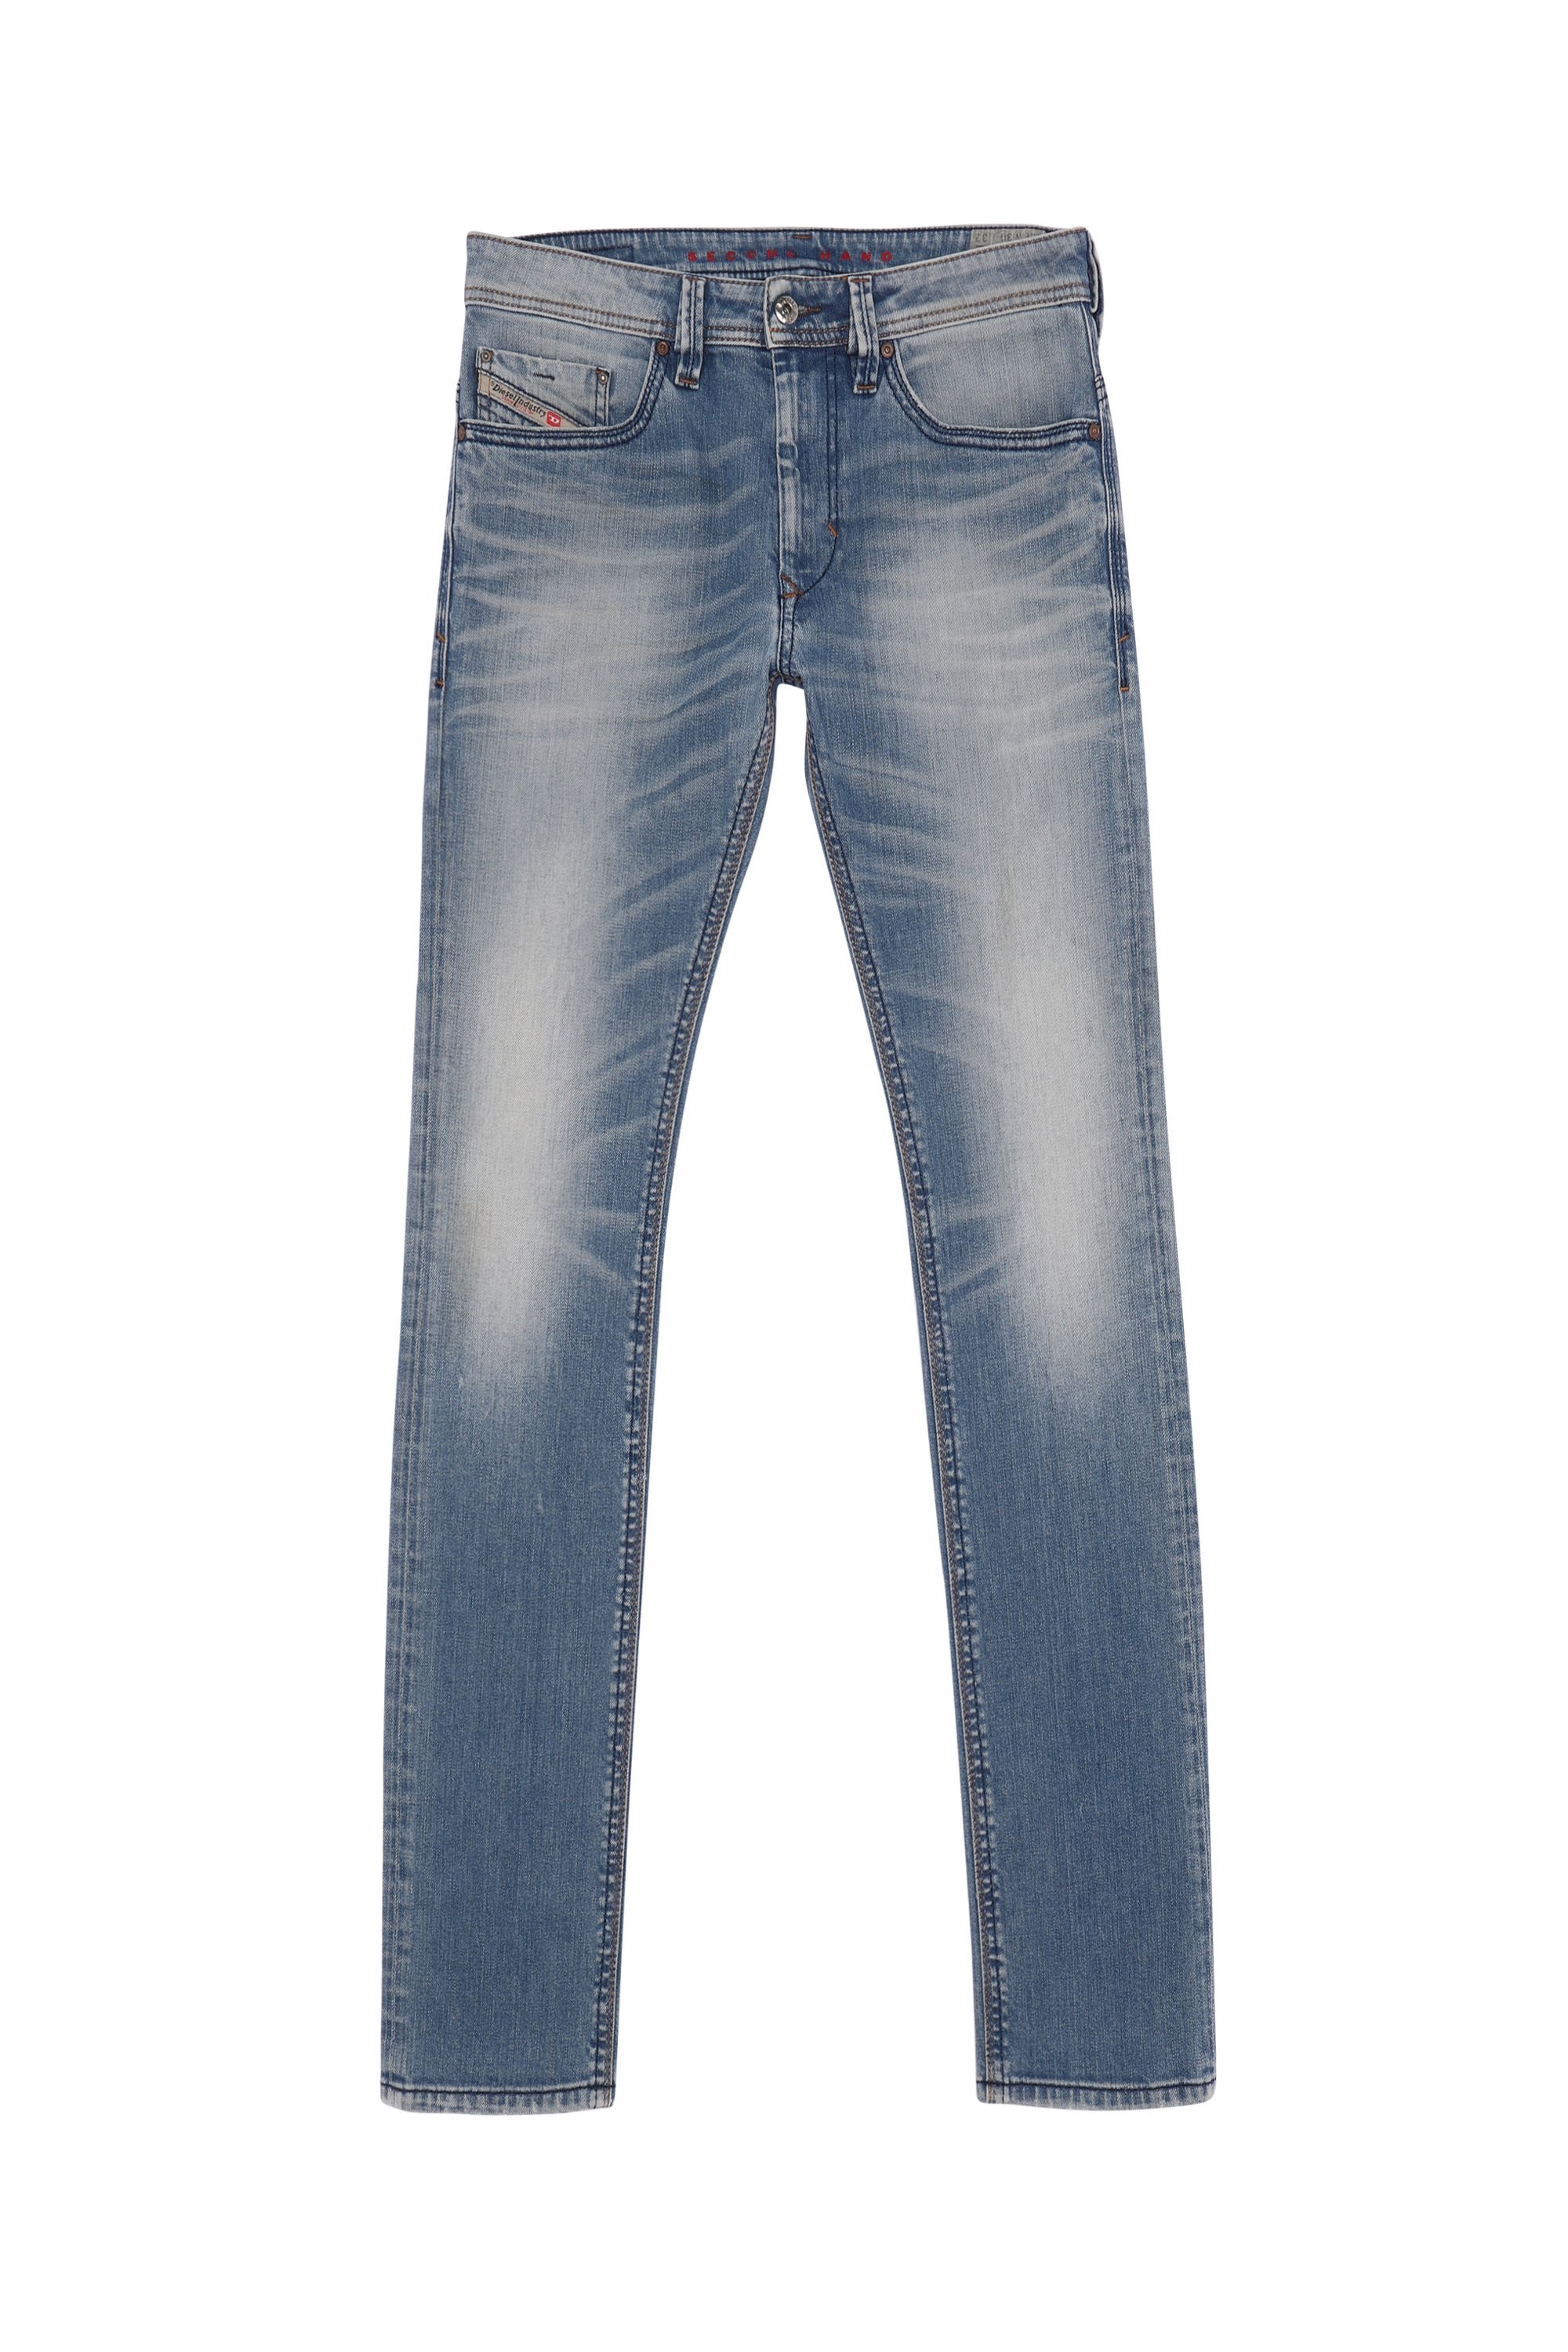 THANAZ, Medium blue - Jeans